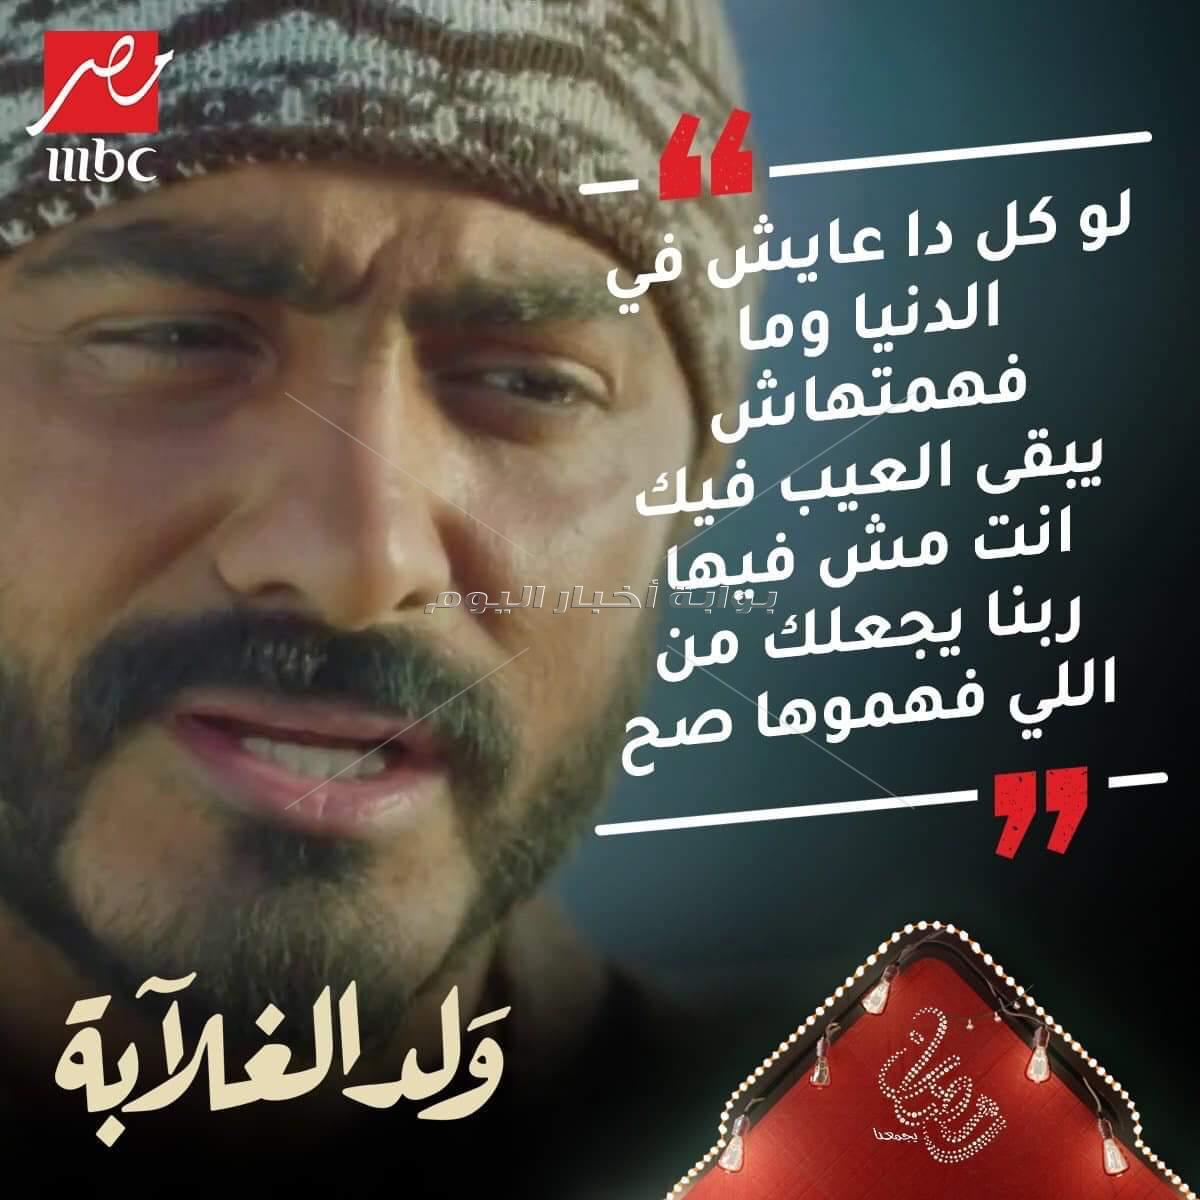 أحمد السقا يعزم تامر حسني علي مشاهدة"ولد الغلابة" والسحور